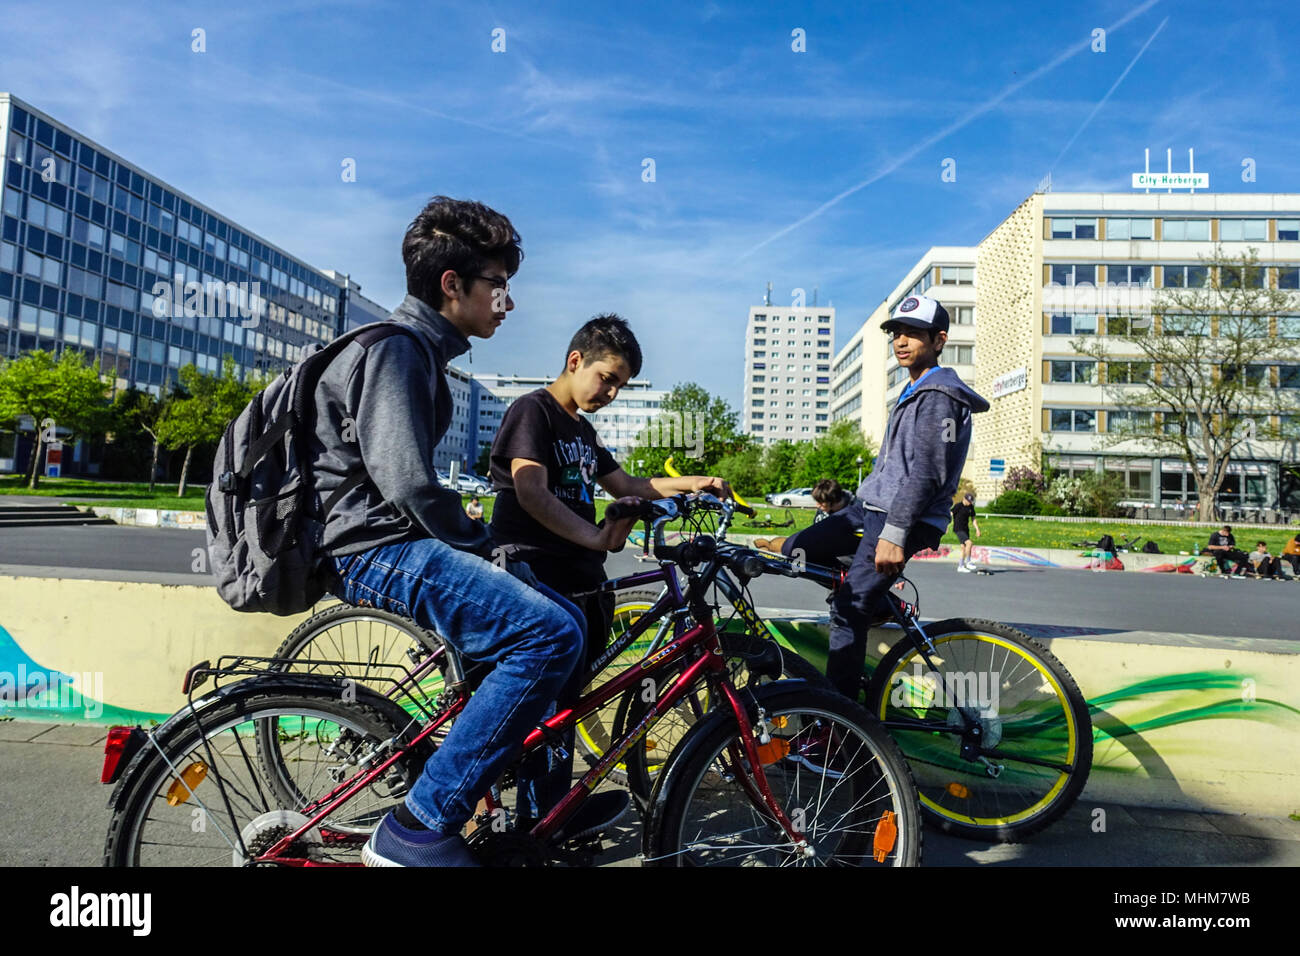 Jugendliche Fahrräder bei einem städtischen Bike- und Skatepark Lingnerallee, Dresden, Sachsen, Deutschland Stockfoto